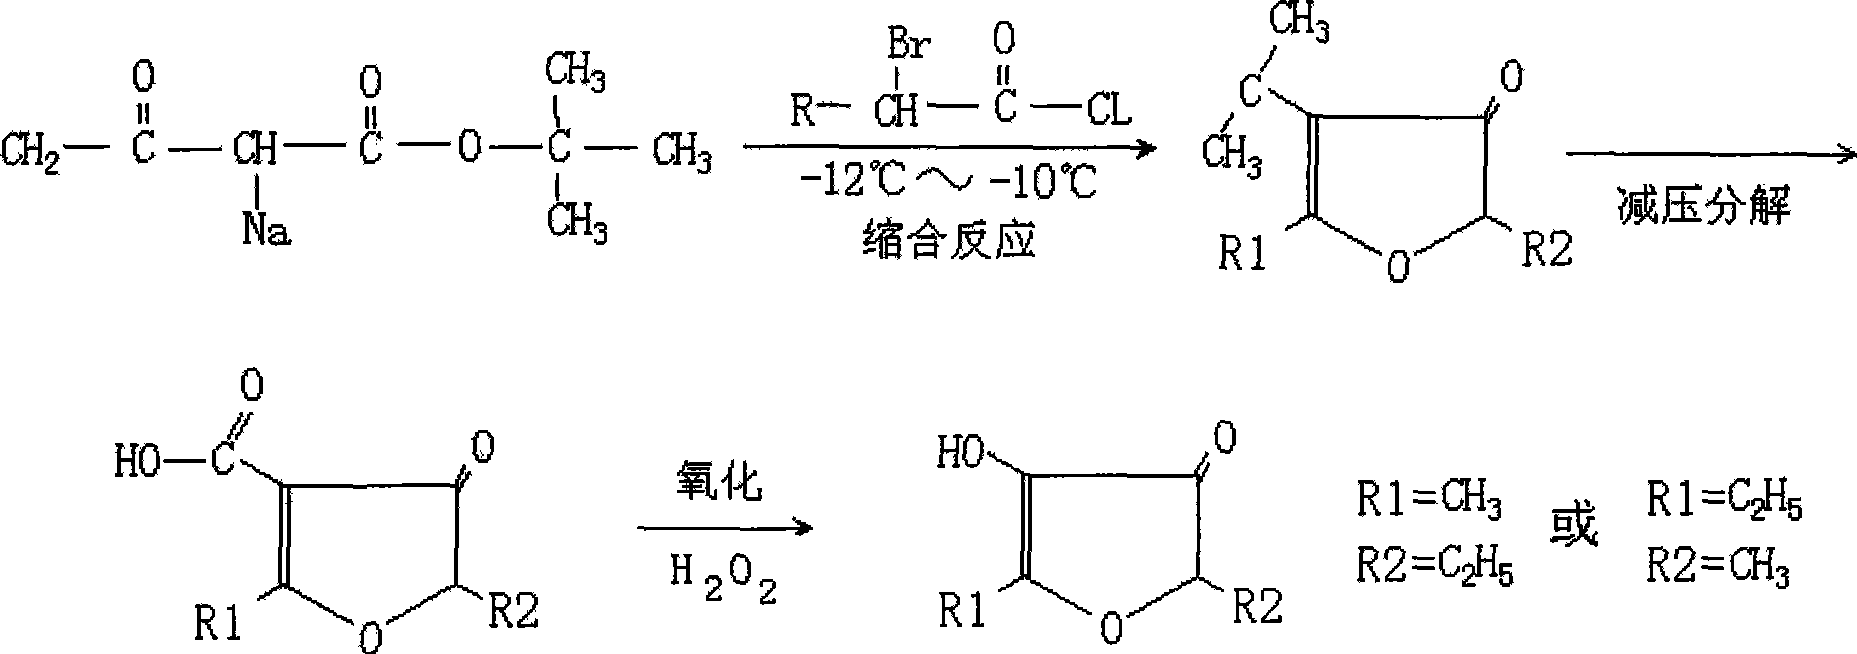 Method for preparing alkyl furanone by low-temperature condensation method